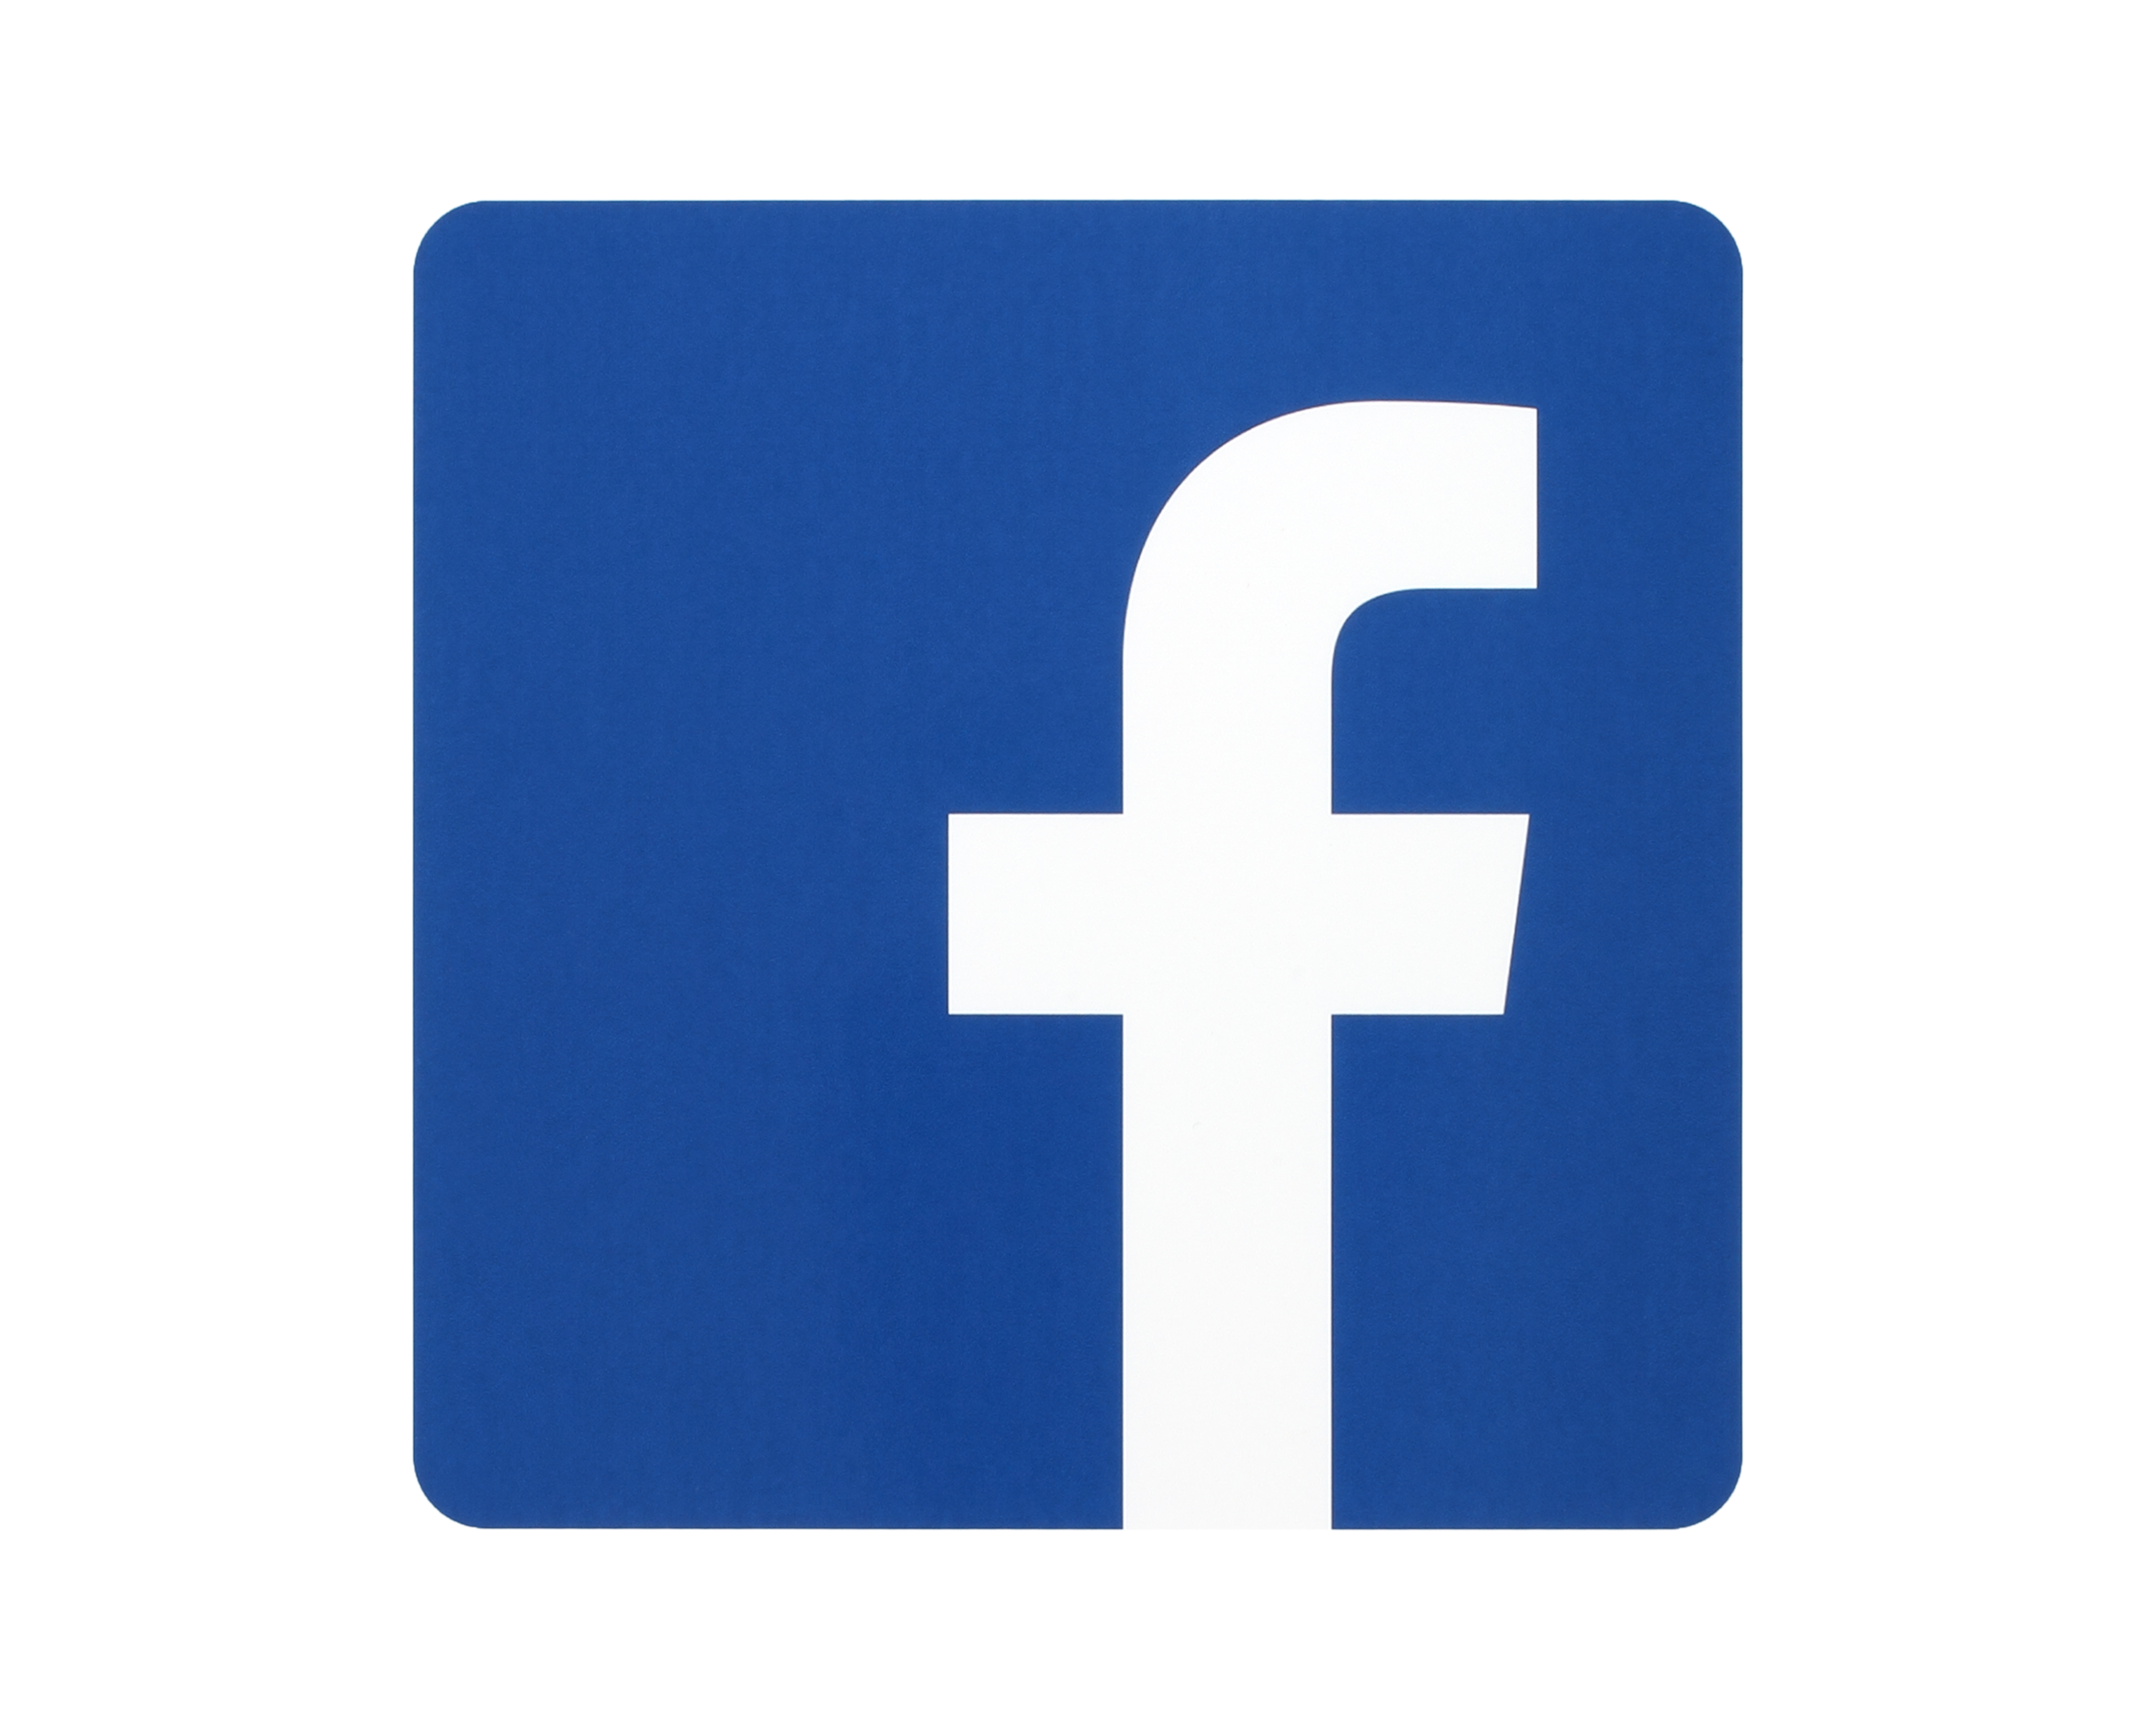 Facebook verzeichnet immer noch die meisten aktiven User auf der ganzen Welt und gehört somit zu den beliebtesten sozialen Netzwerken. 